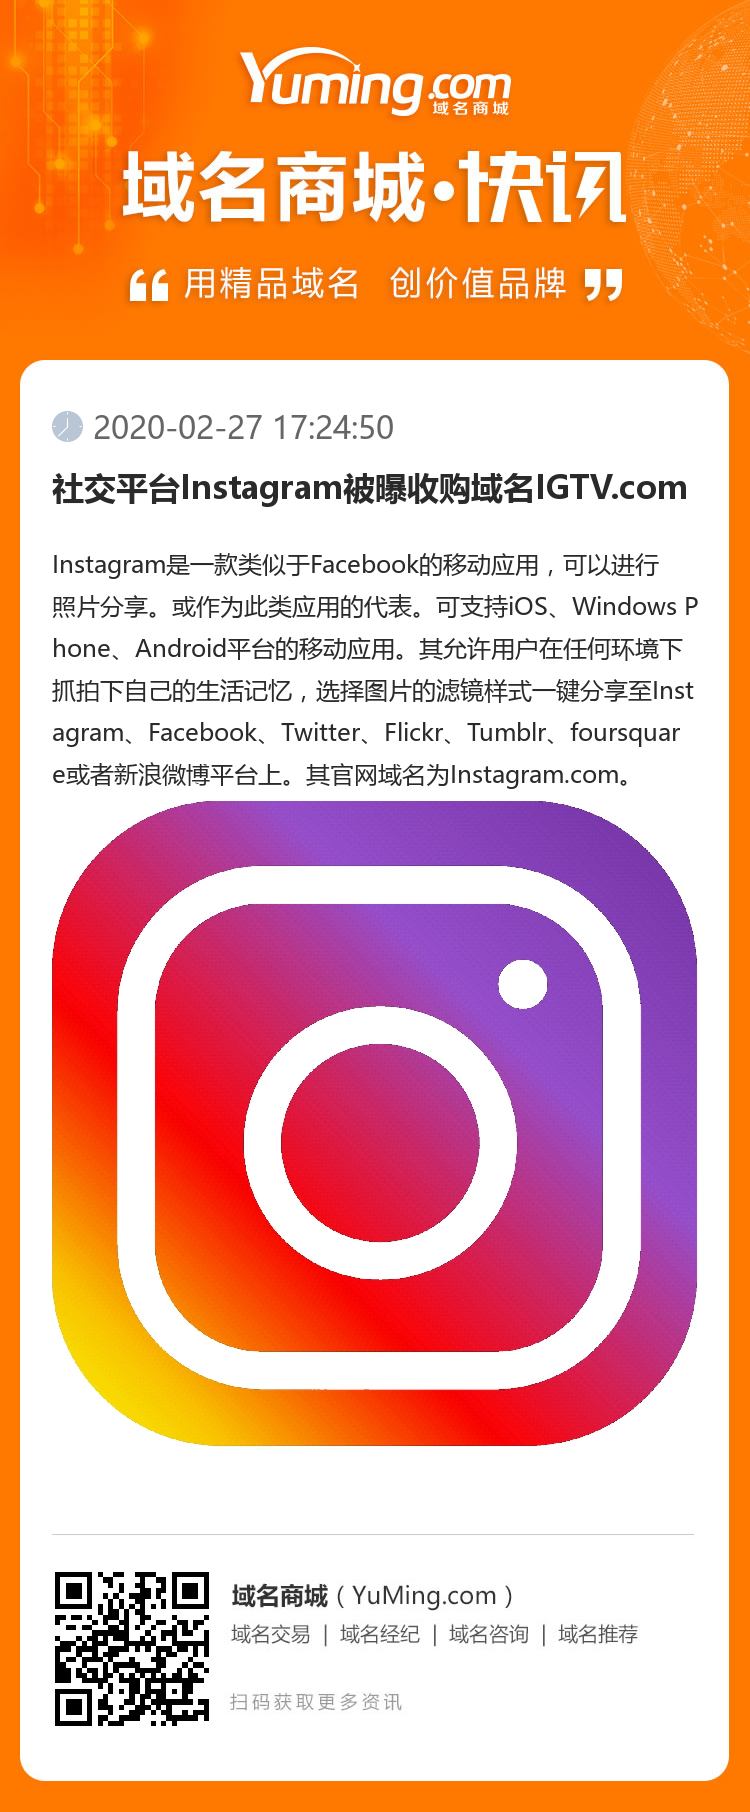 社交平台Instagram被曝收购域名IGTV.com